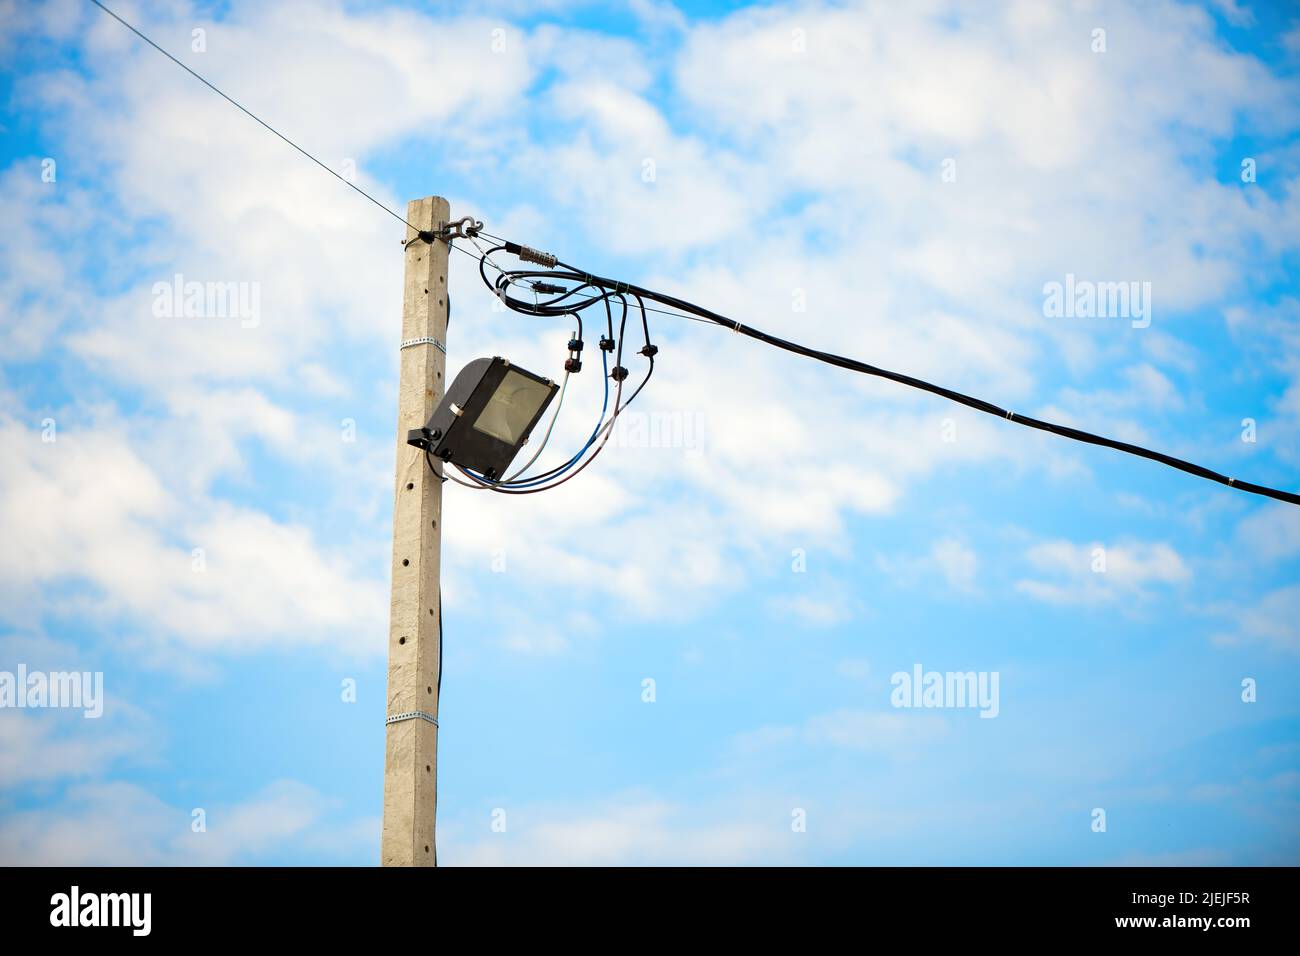 La luz de la calle sobre un poste de hormigón contra el cielo azul y las nubes Foto de stock